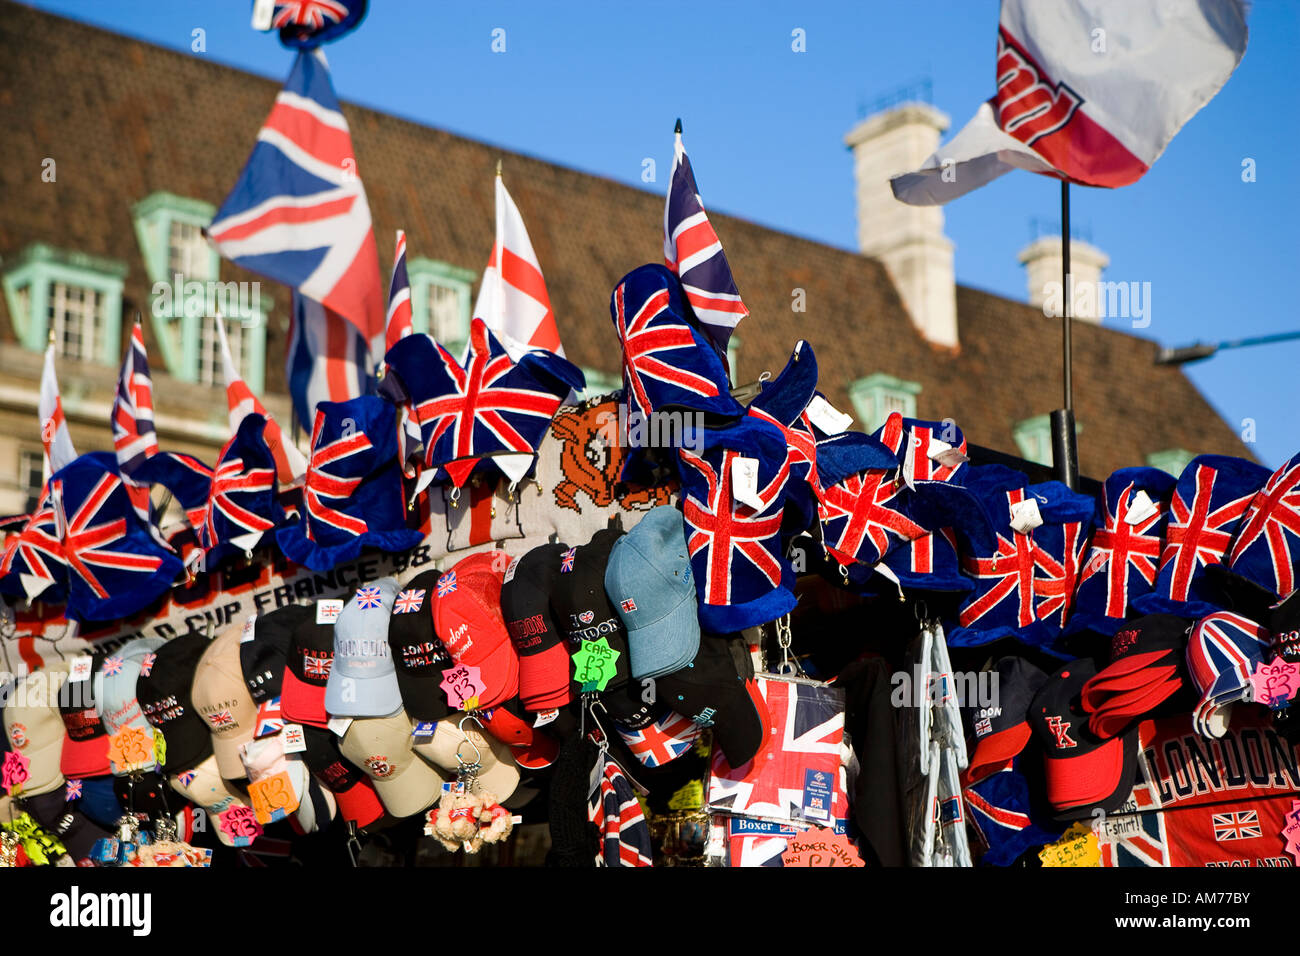 London, England und britische Erinnerungsstücke und Andenken einschließlich Kappen. Fahnen und t-shirts Stockfoto